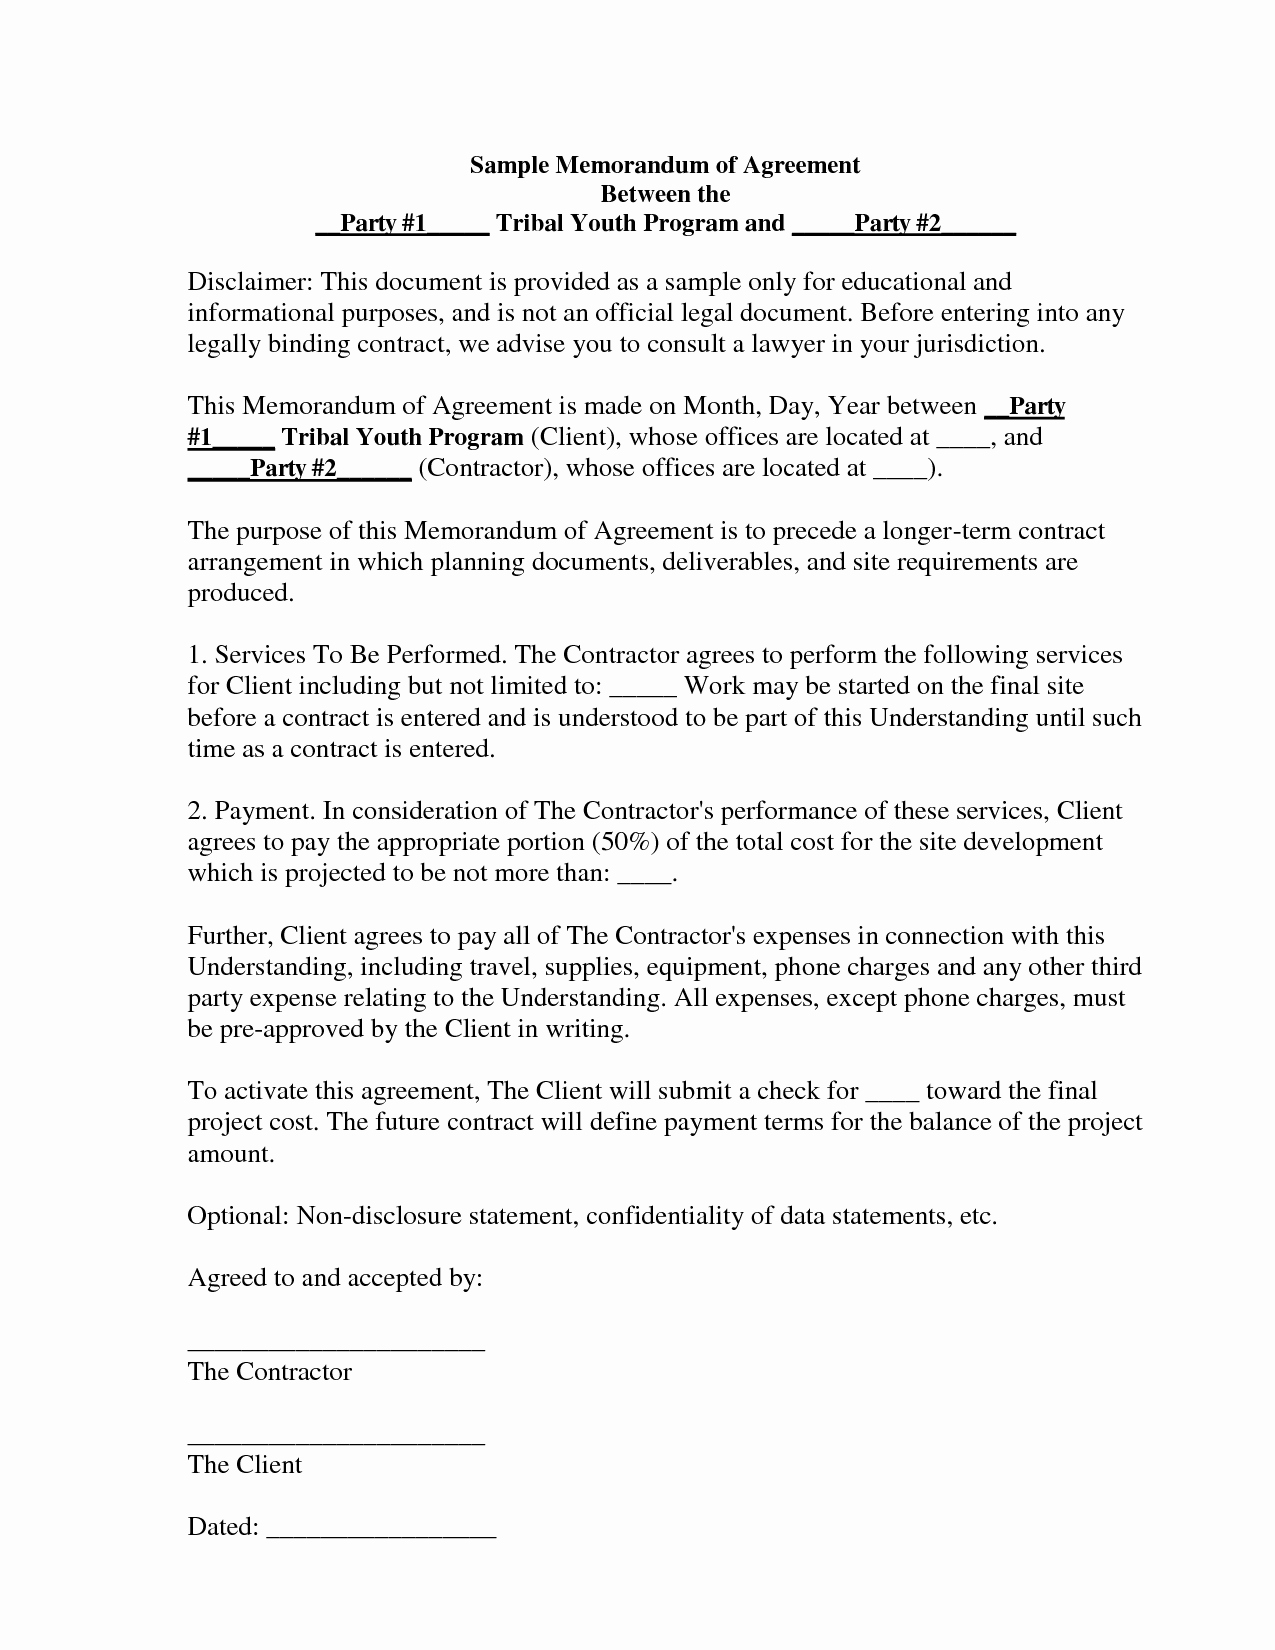 Memorandum Of Agreement Templates Unique Best S Of Memorandum Agreement Sample Sample